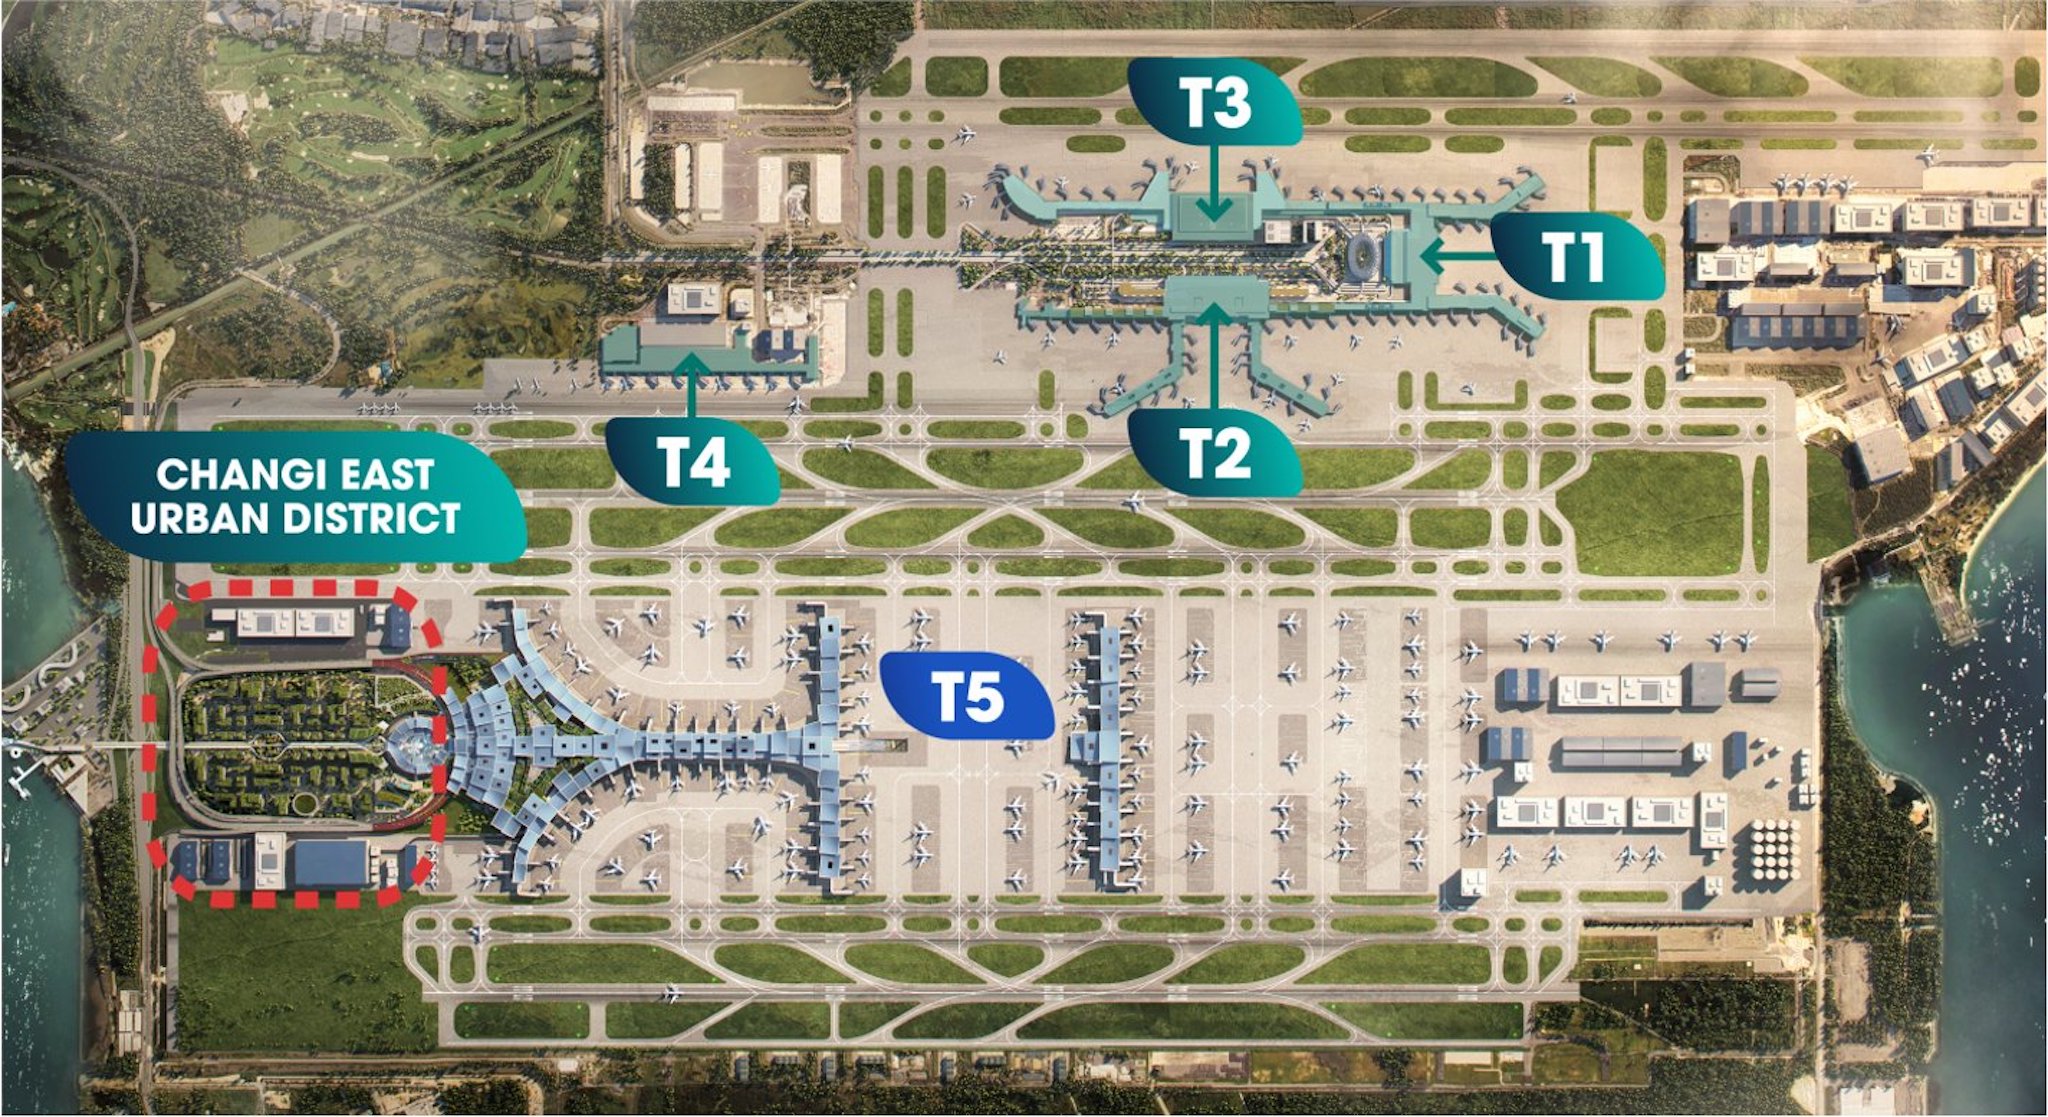 Sân bay Changi Singapore có kế hoạch mở rộng thêm nhà ga T5